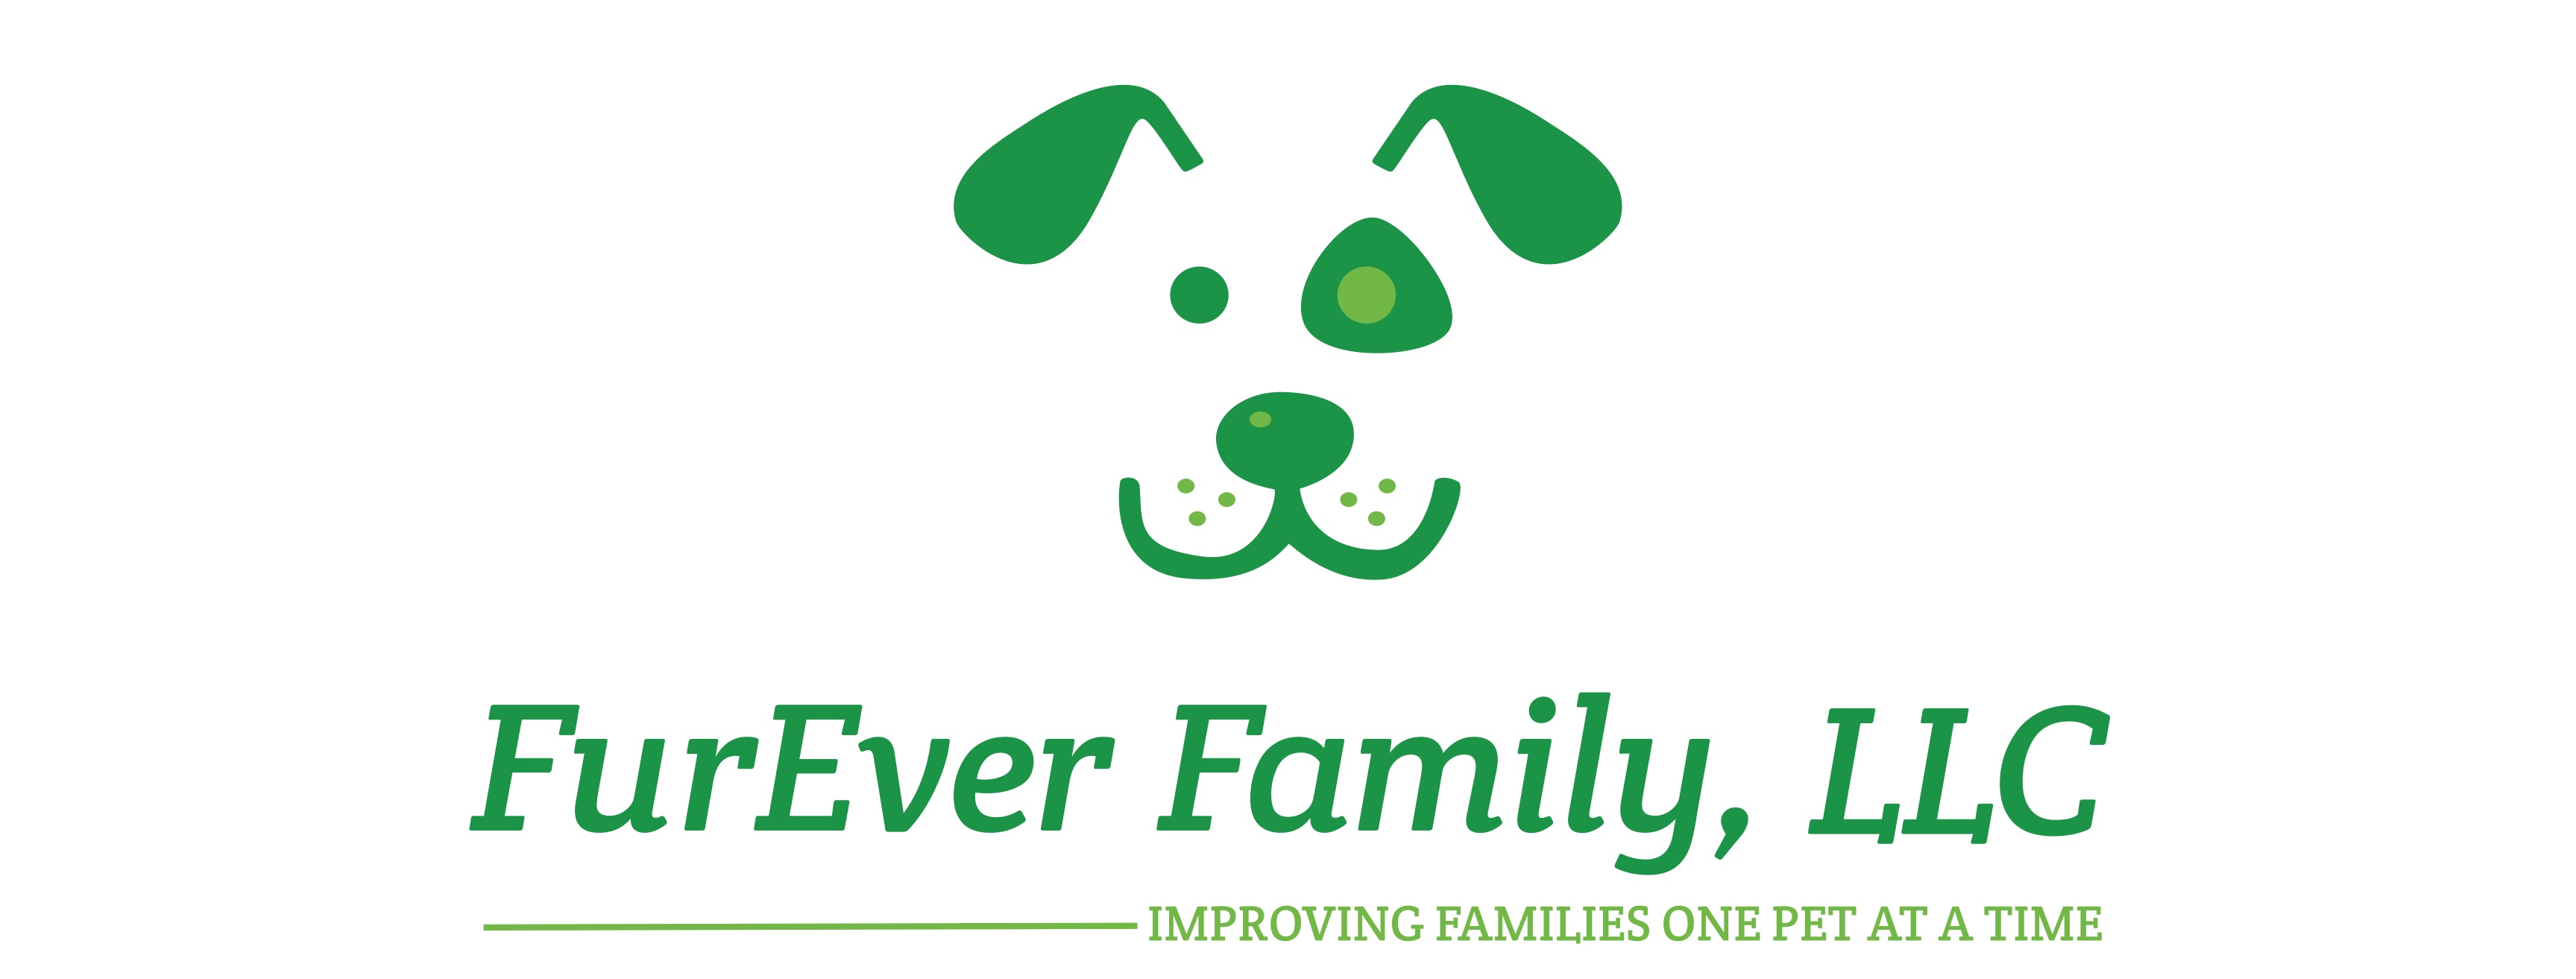 FurEver Family, LLC